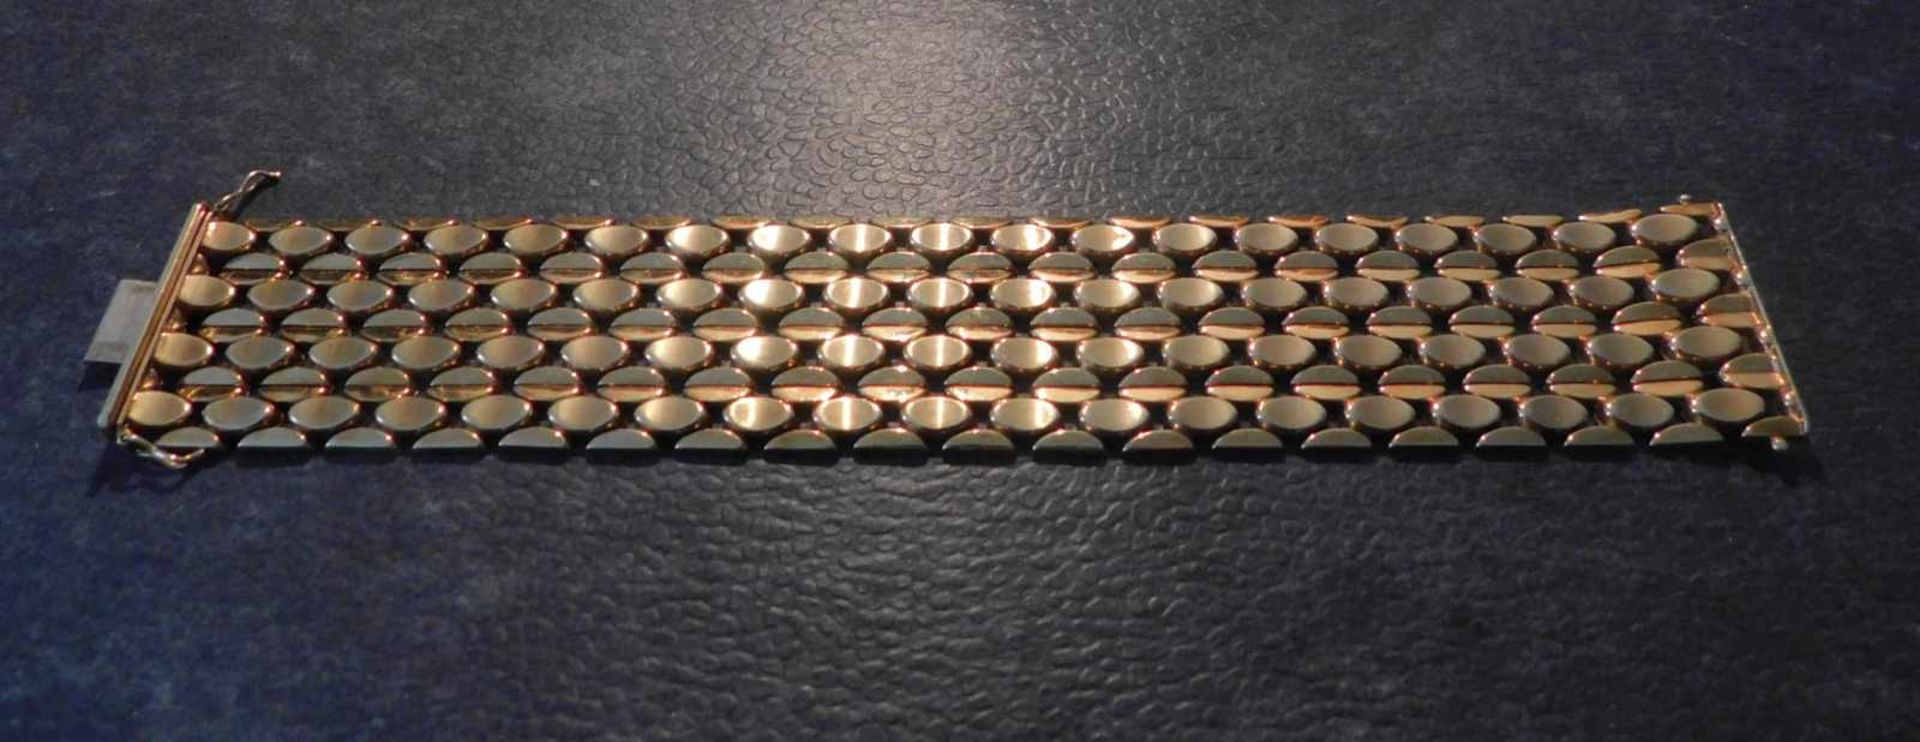 Armband, 585 Gelbgold, 3,5 cm breit, 50,2 g, Steckschloss mit 2 SicherheitsachtenLänge 19,7 cm, - Image 5 of 5